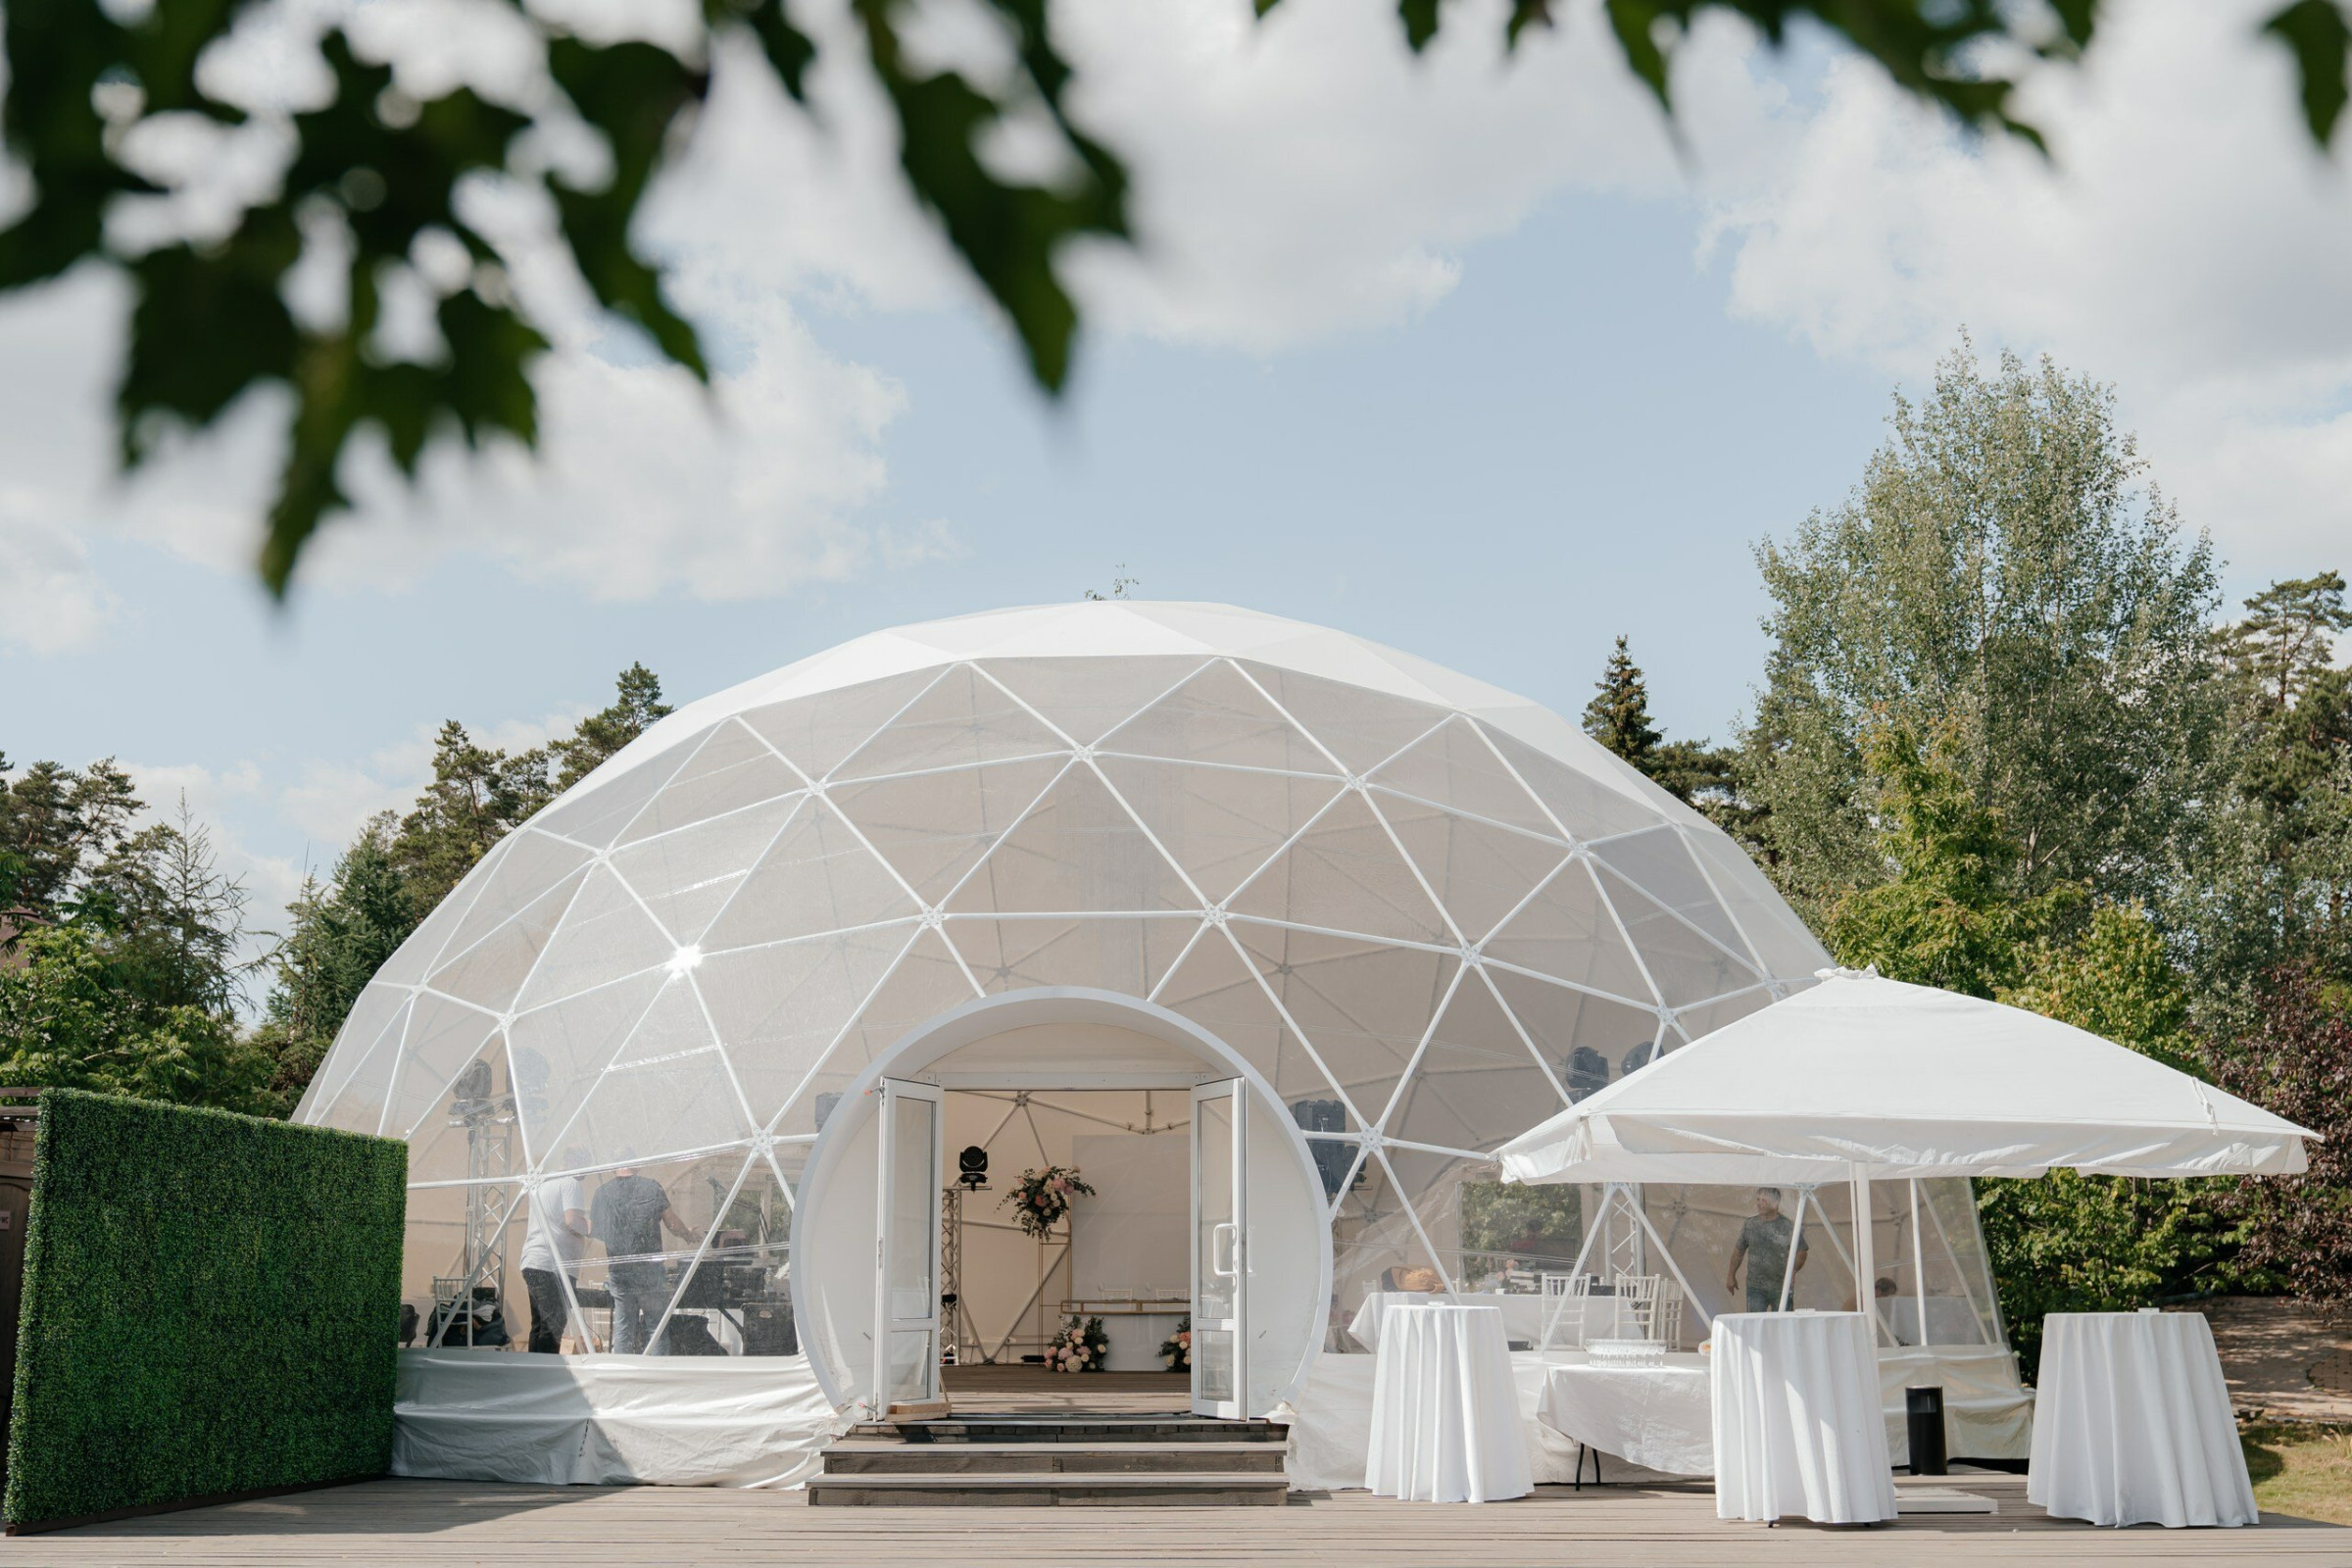 шатер для мероприятий и праздников на природе в Подмосковье